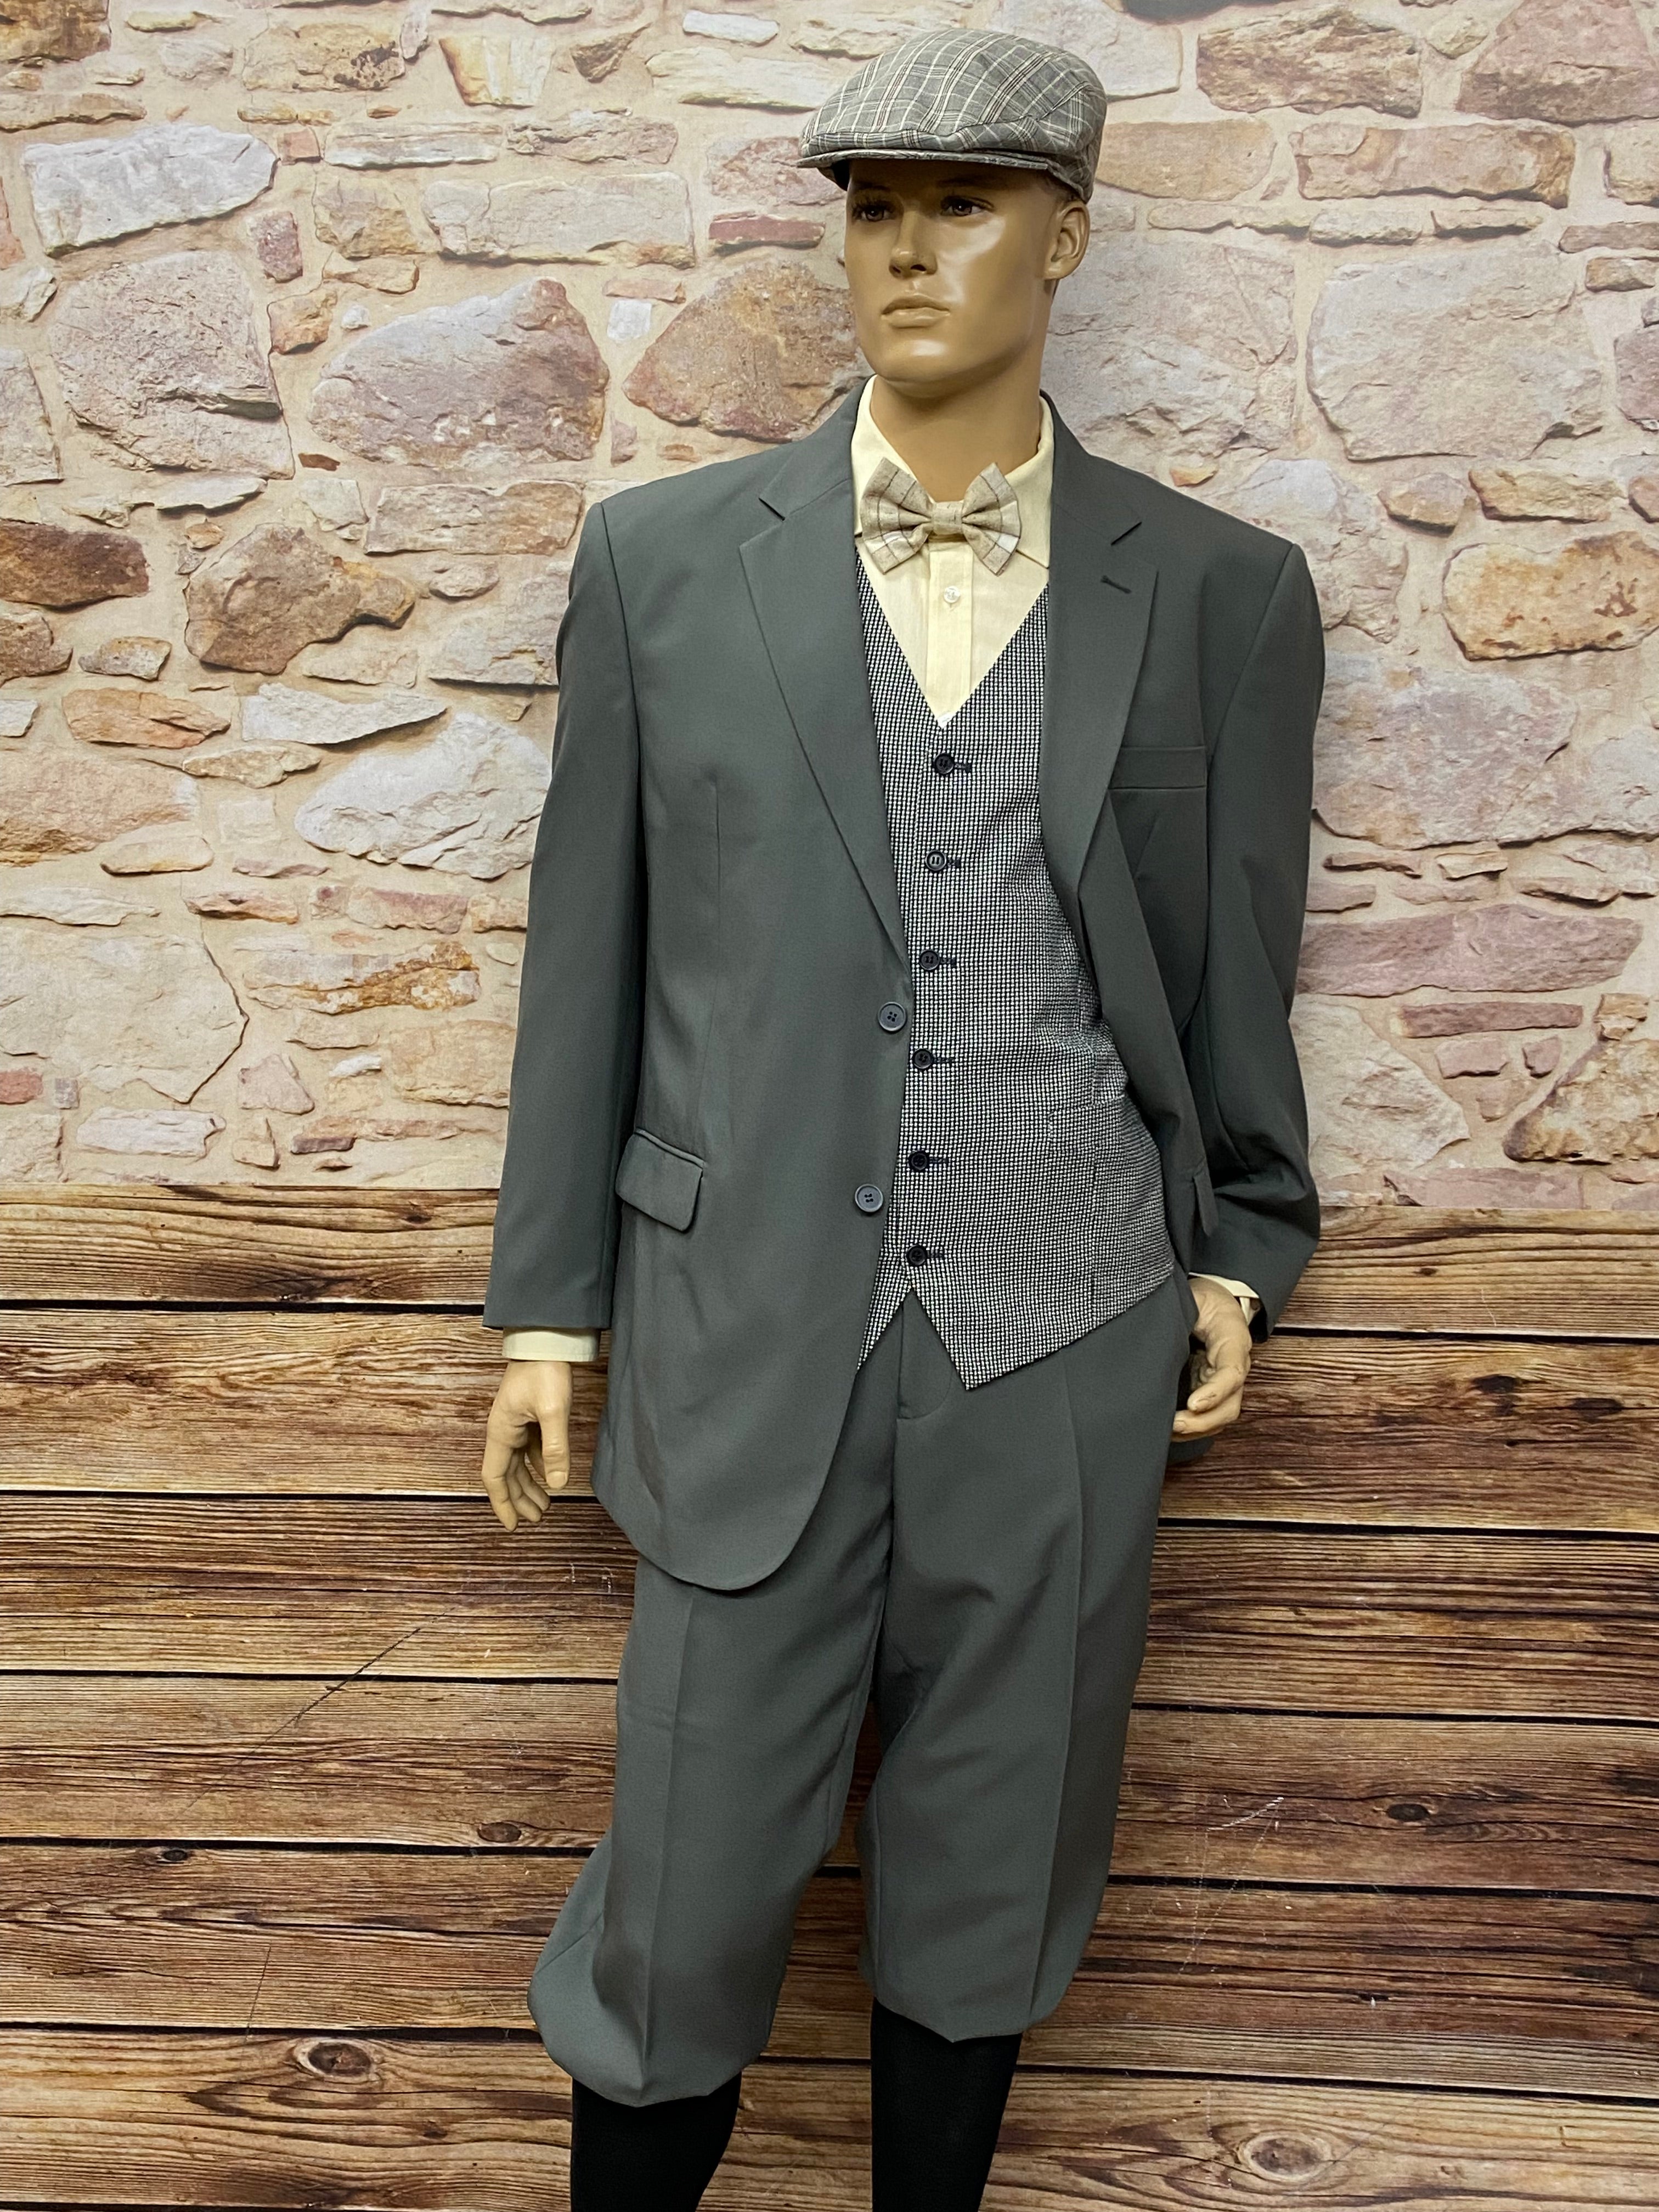 20er Jahre Mode Männer, Peaky Blinders Outfit Gr.58